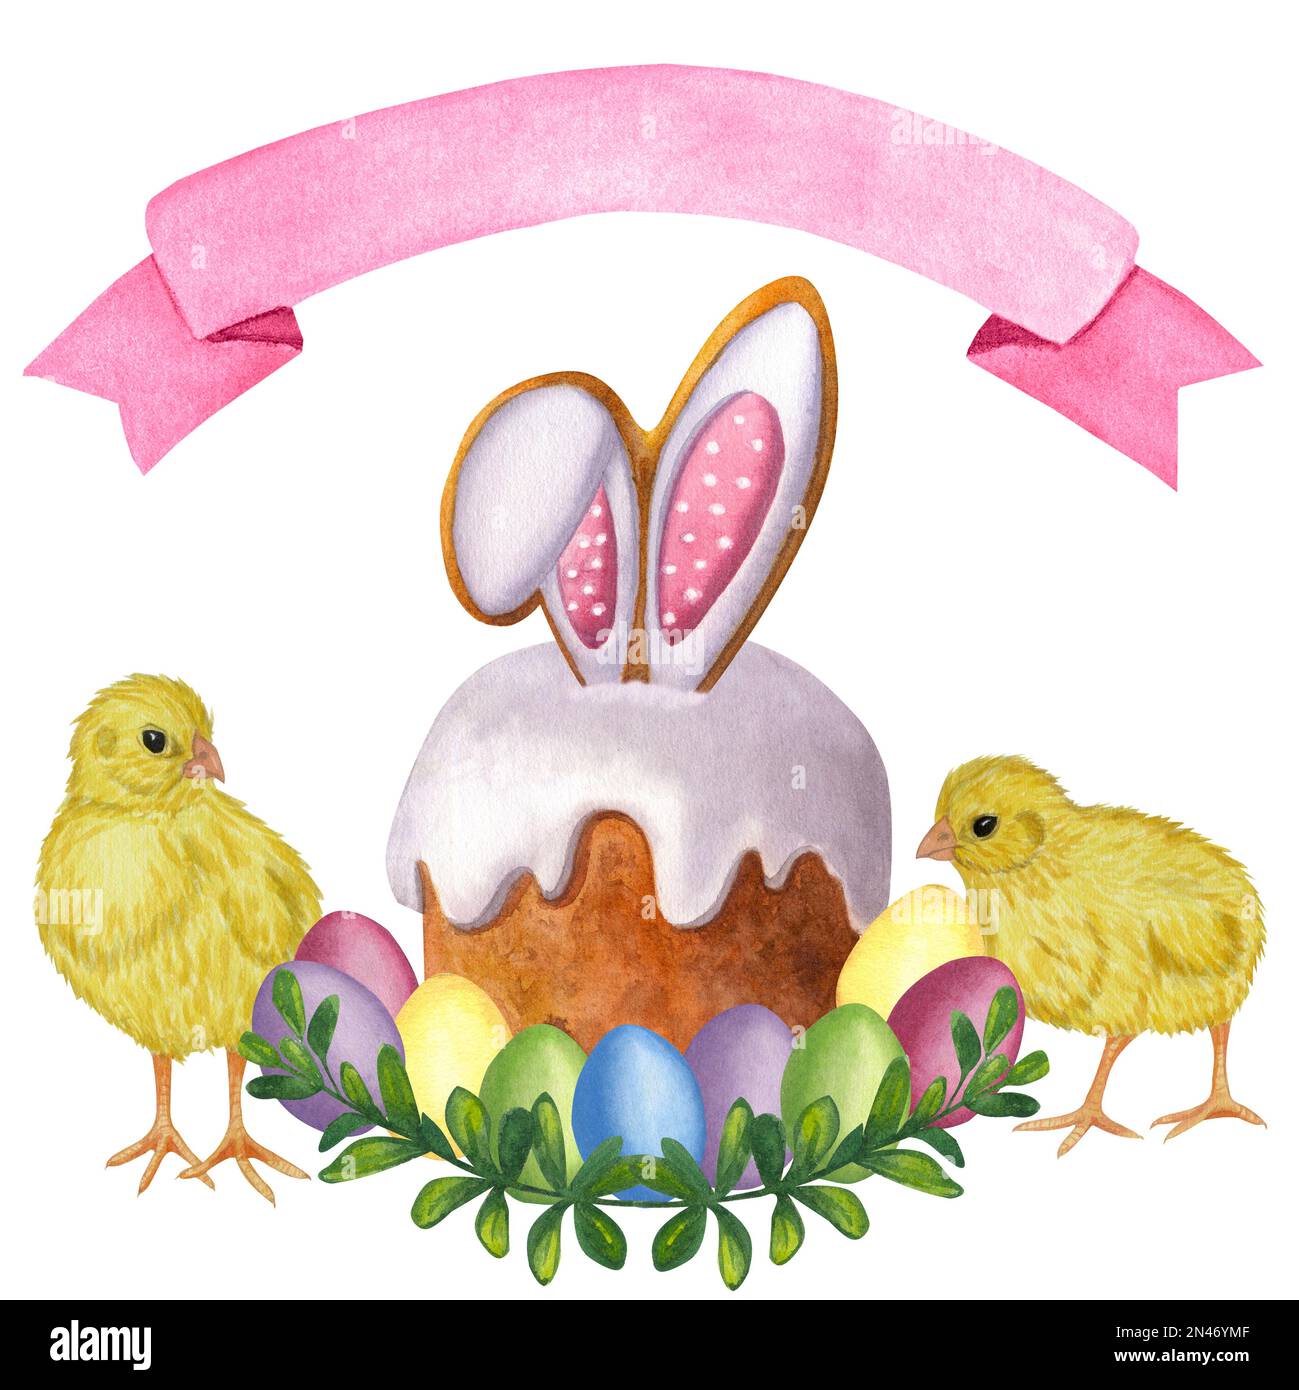 Osterkuchen in weißer Glasur. Mehrfarbige bemalte Eier. Gelbe Hühner. Rosa Band. Handgezeichnete Aquarelldarstellung isoliert auf weißem Hintergrund. Stockfoto